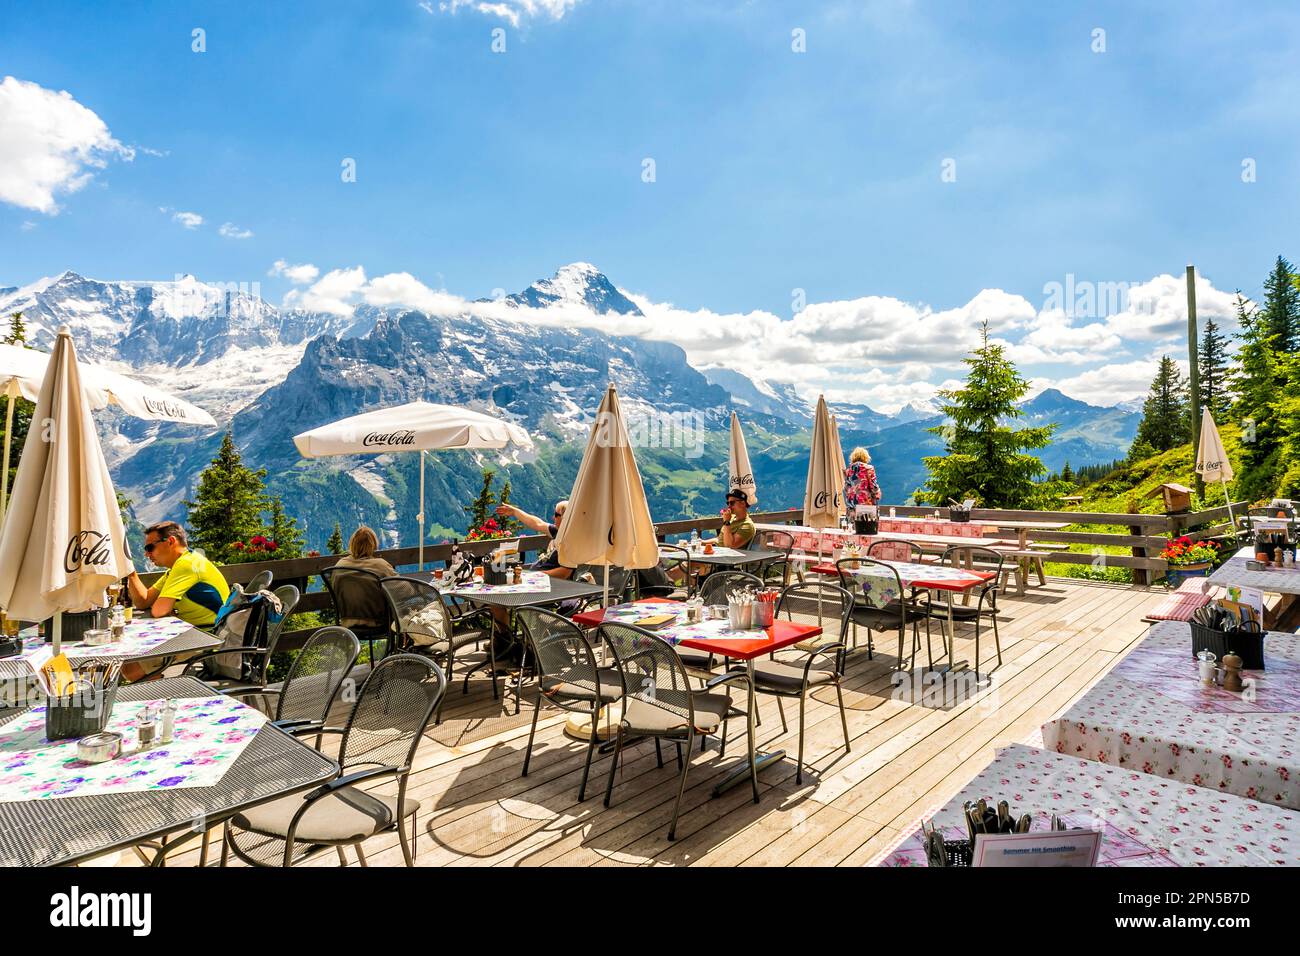 Ristorante di montagna a Bussalp con vista panoramica sulla cima prima, Grindelwald. Nella regione dello Jungfrau, nelle Alpi dell'Oberland Bernese, in Svizzera Foto Stock